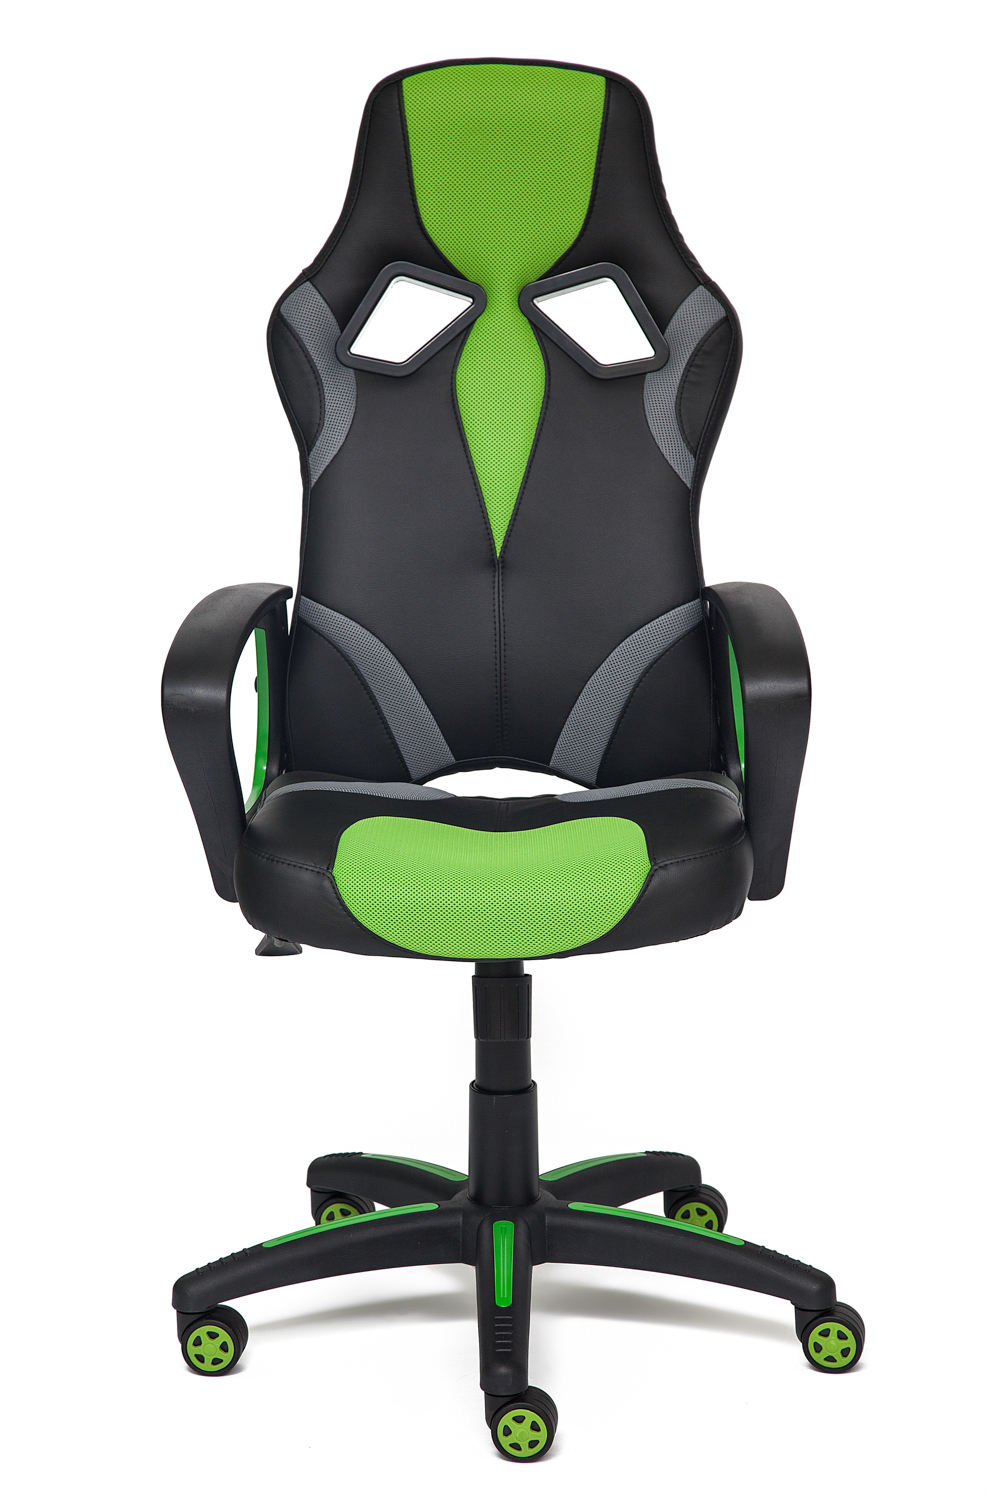 Runner Кресло офисное (черный/зеленый кожзам/ткань)